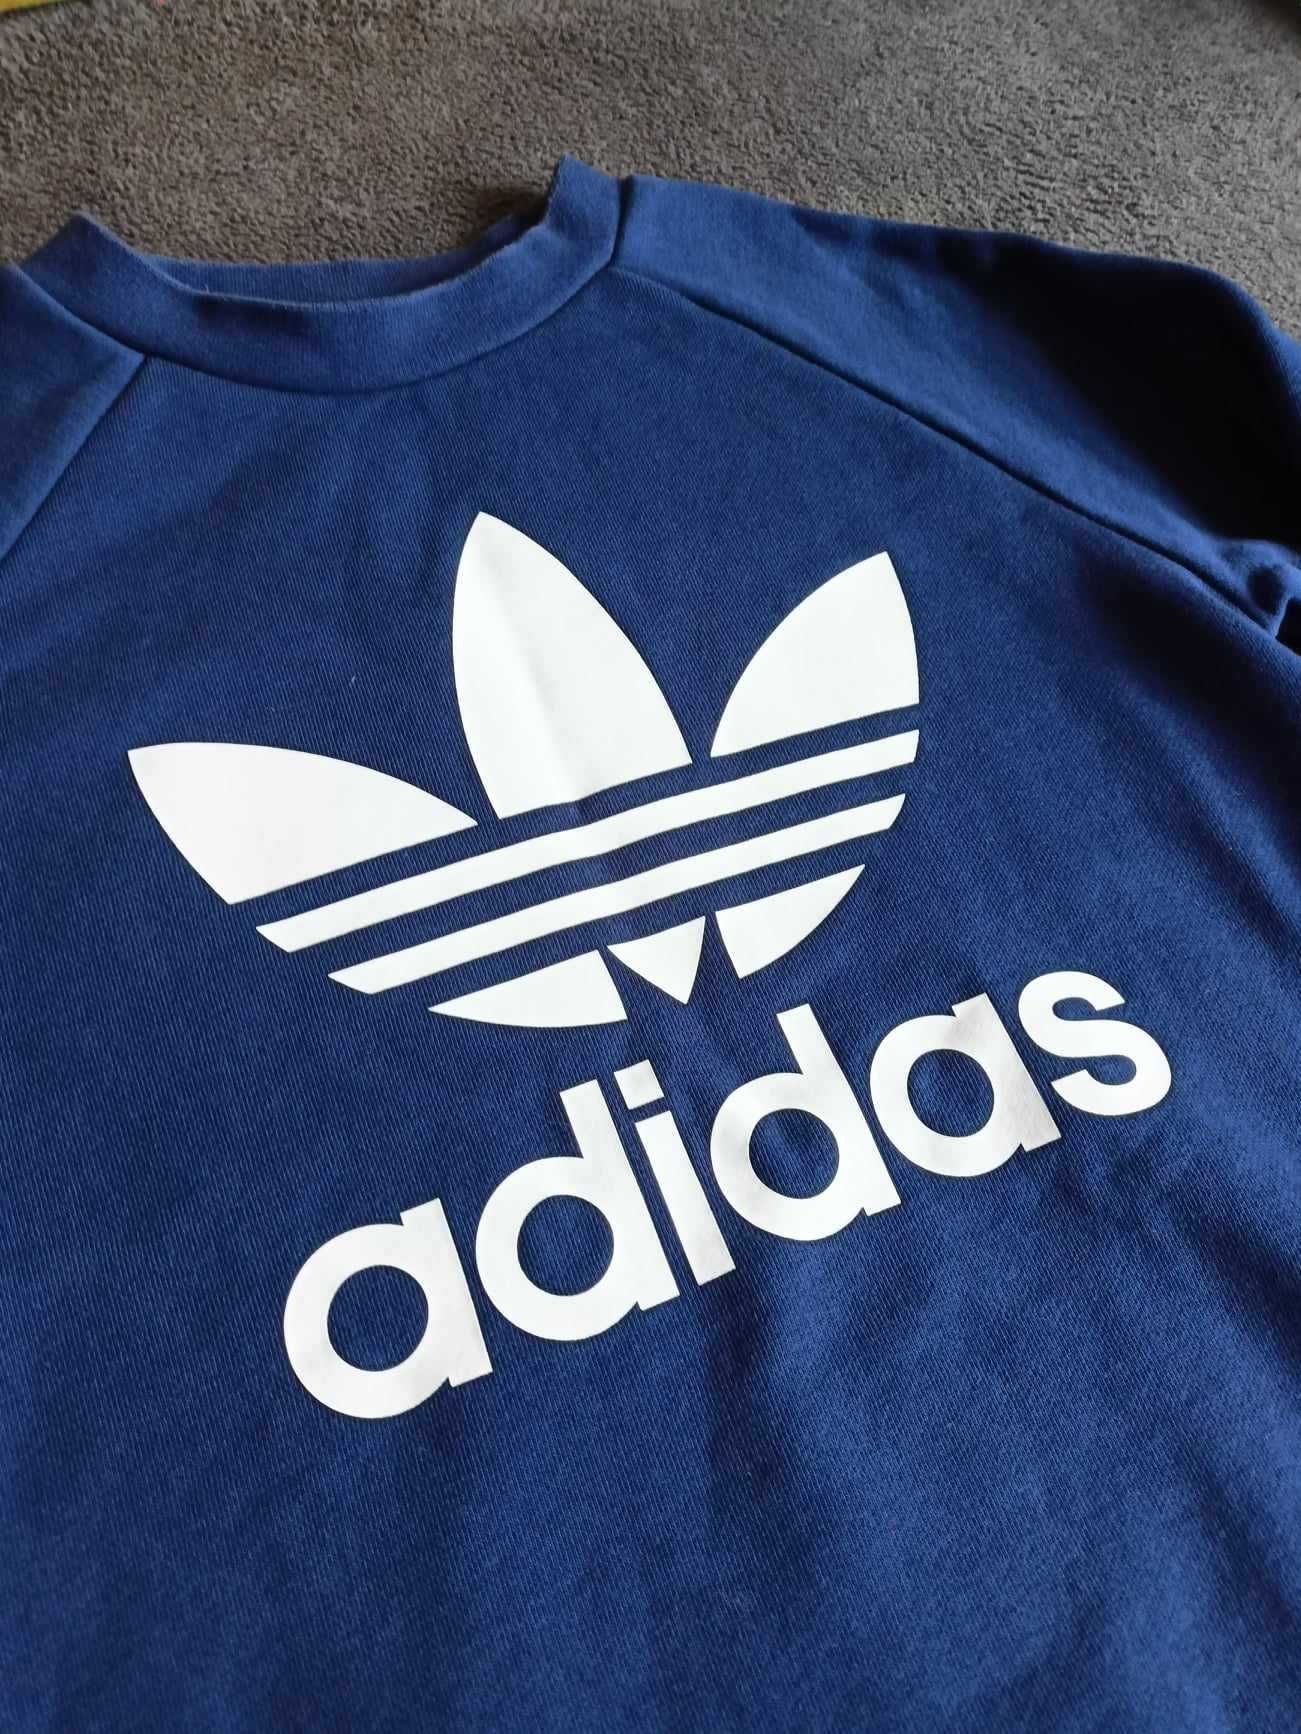 Damska bluza wkładana przez głowę Adidas - granatowa, rozmiar S